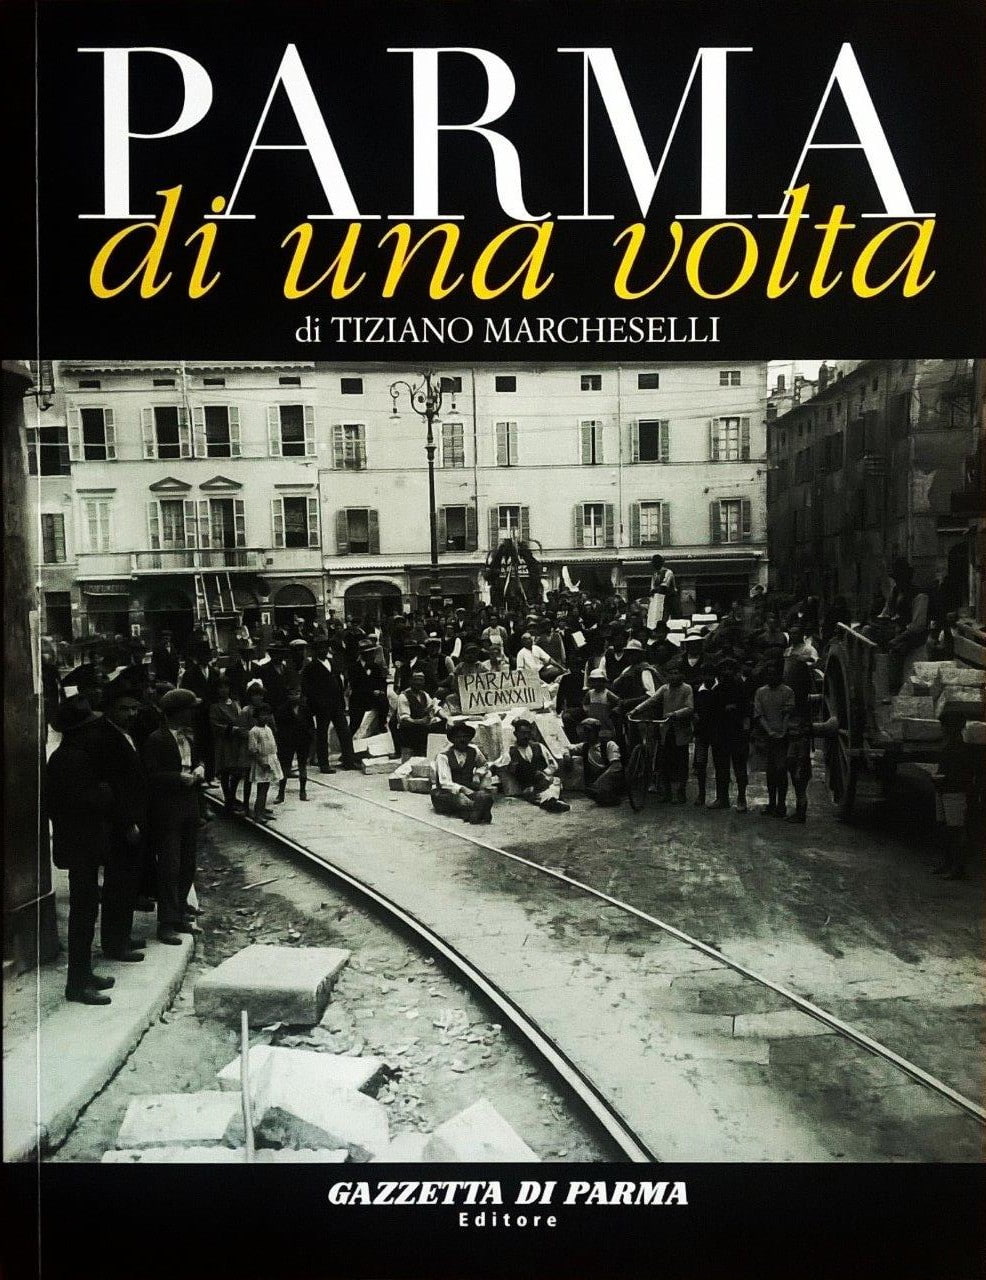 Tiziano Marcheselli, “Parma di una volta - volume quarto”, Parma, Gazzetta di Parma Editore (Grafiche Step Editrice), 2006